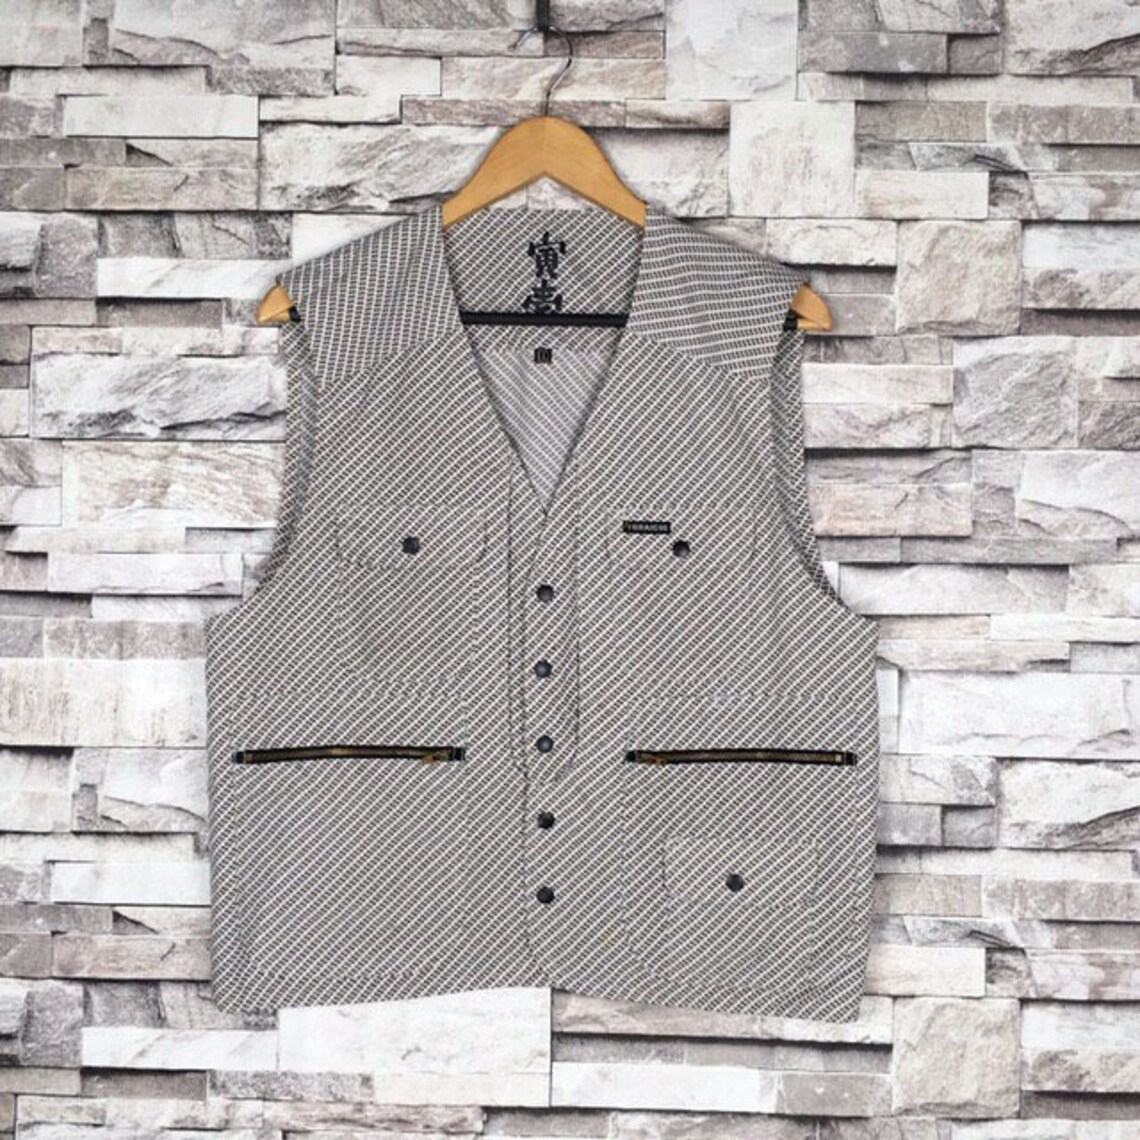 Vintage TORAICHI Japanese Brand Vest Jacket Sleeveless - Etsy